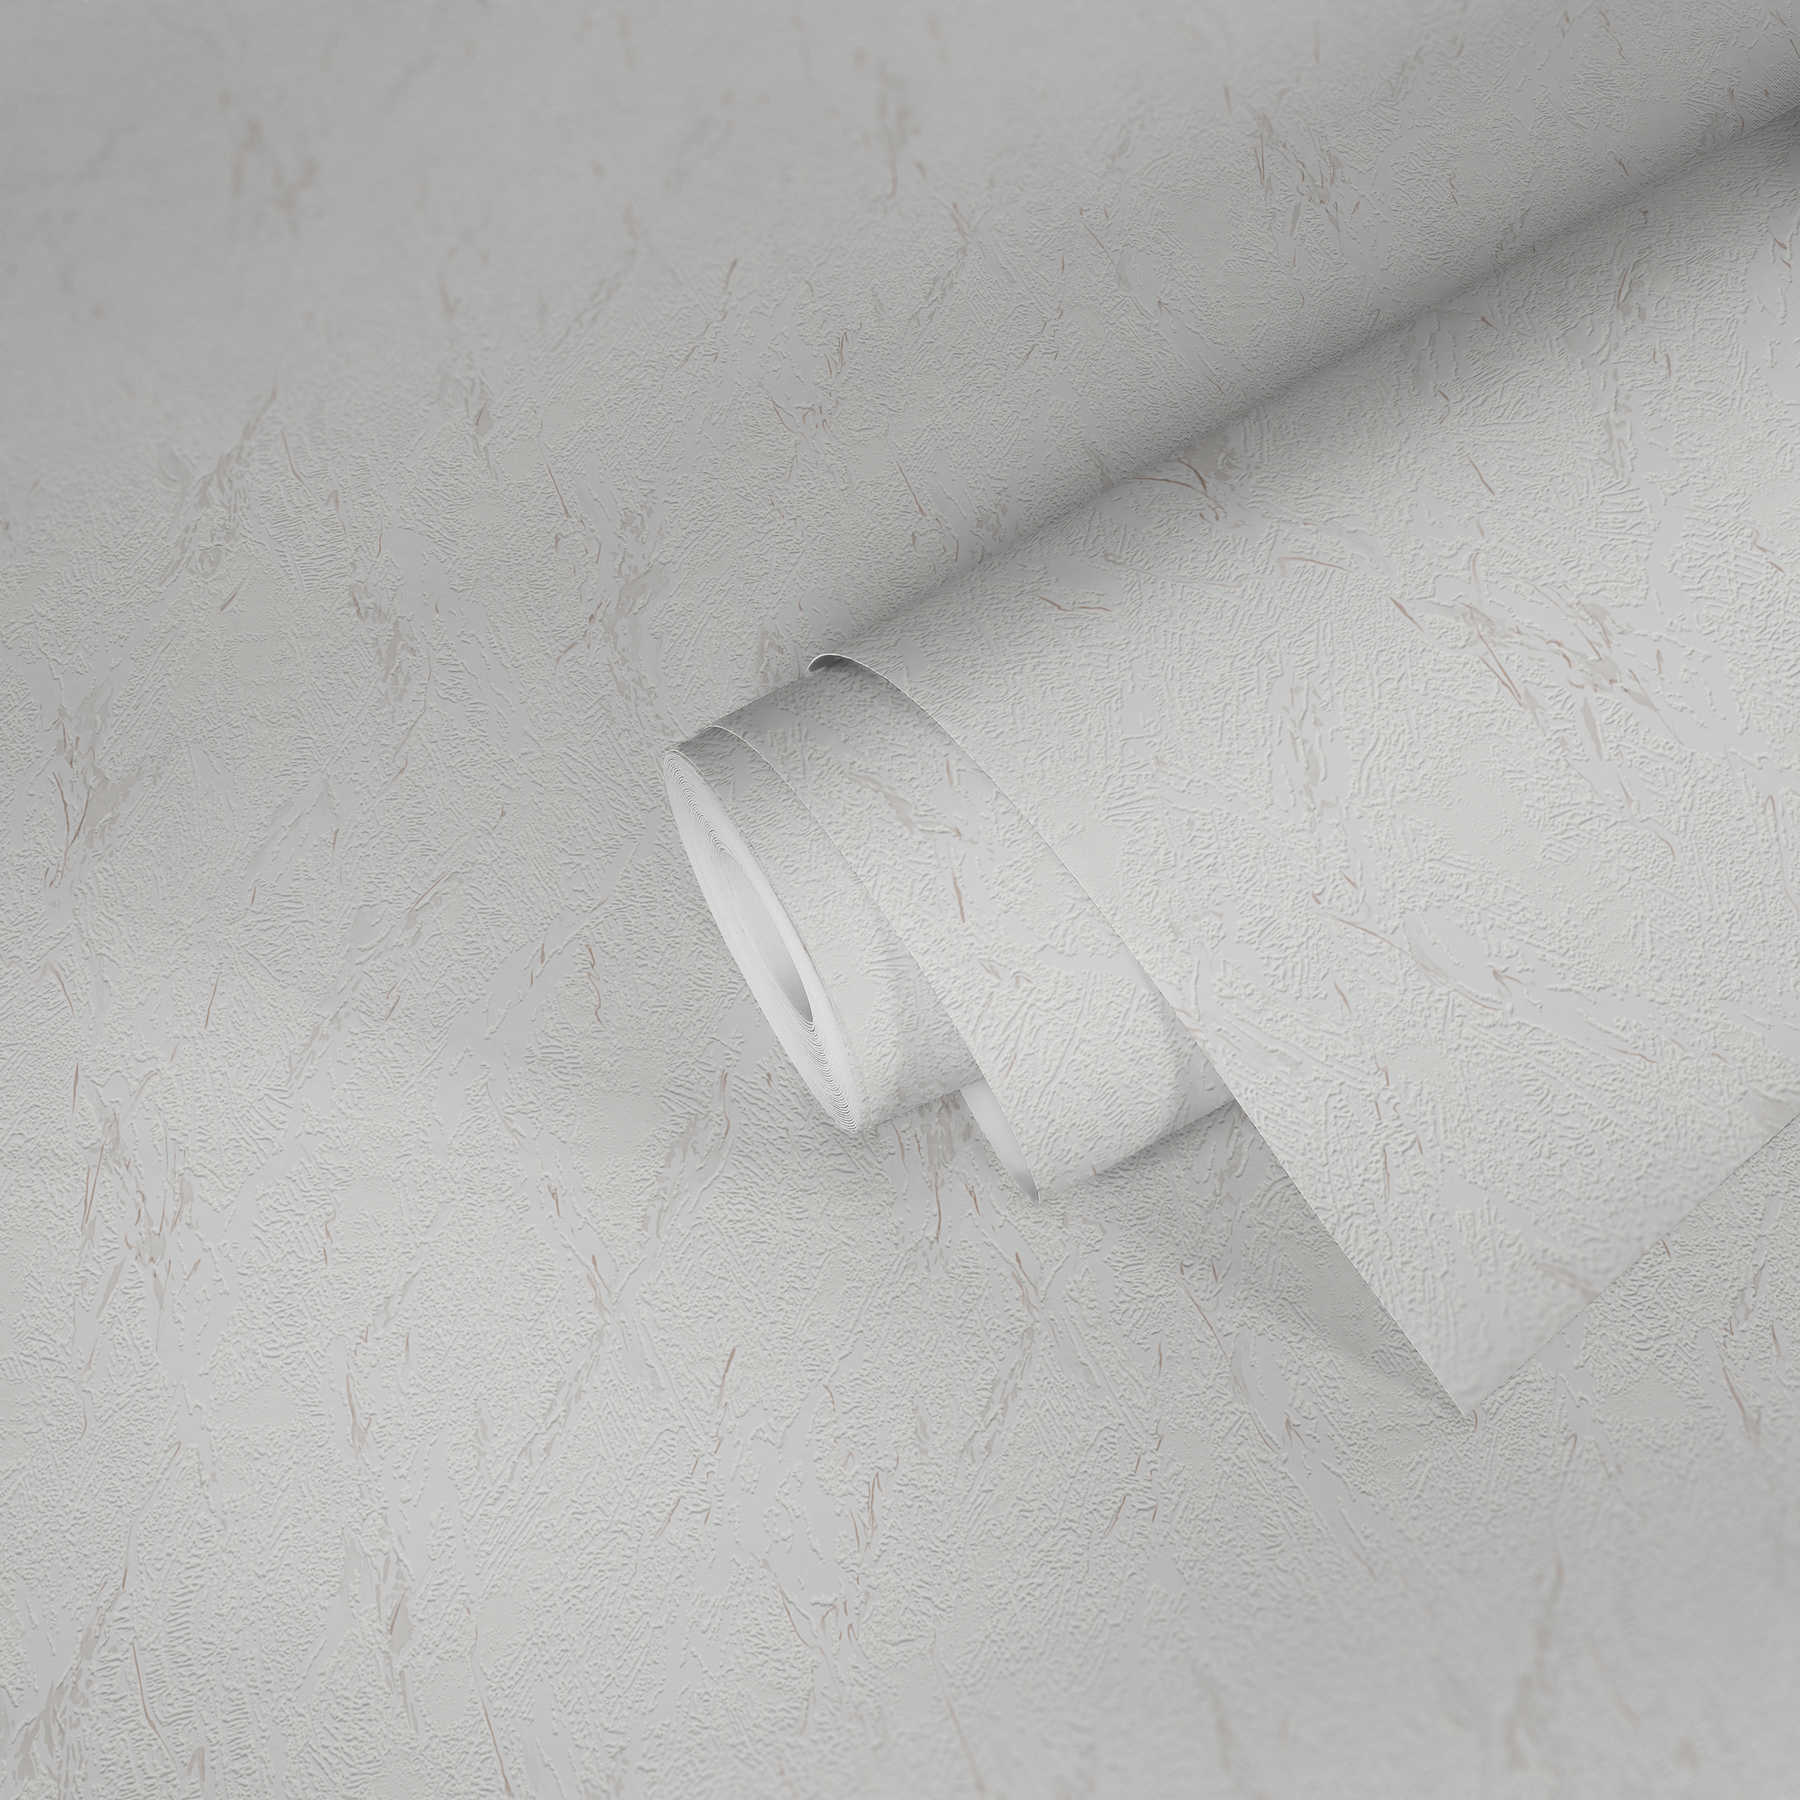             Gestructureerd Papierbehang met gipslook - bruin, wit
        